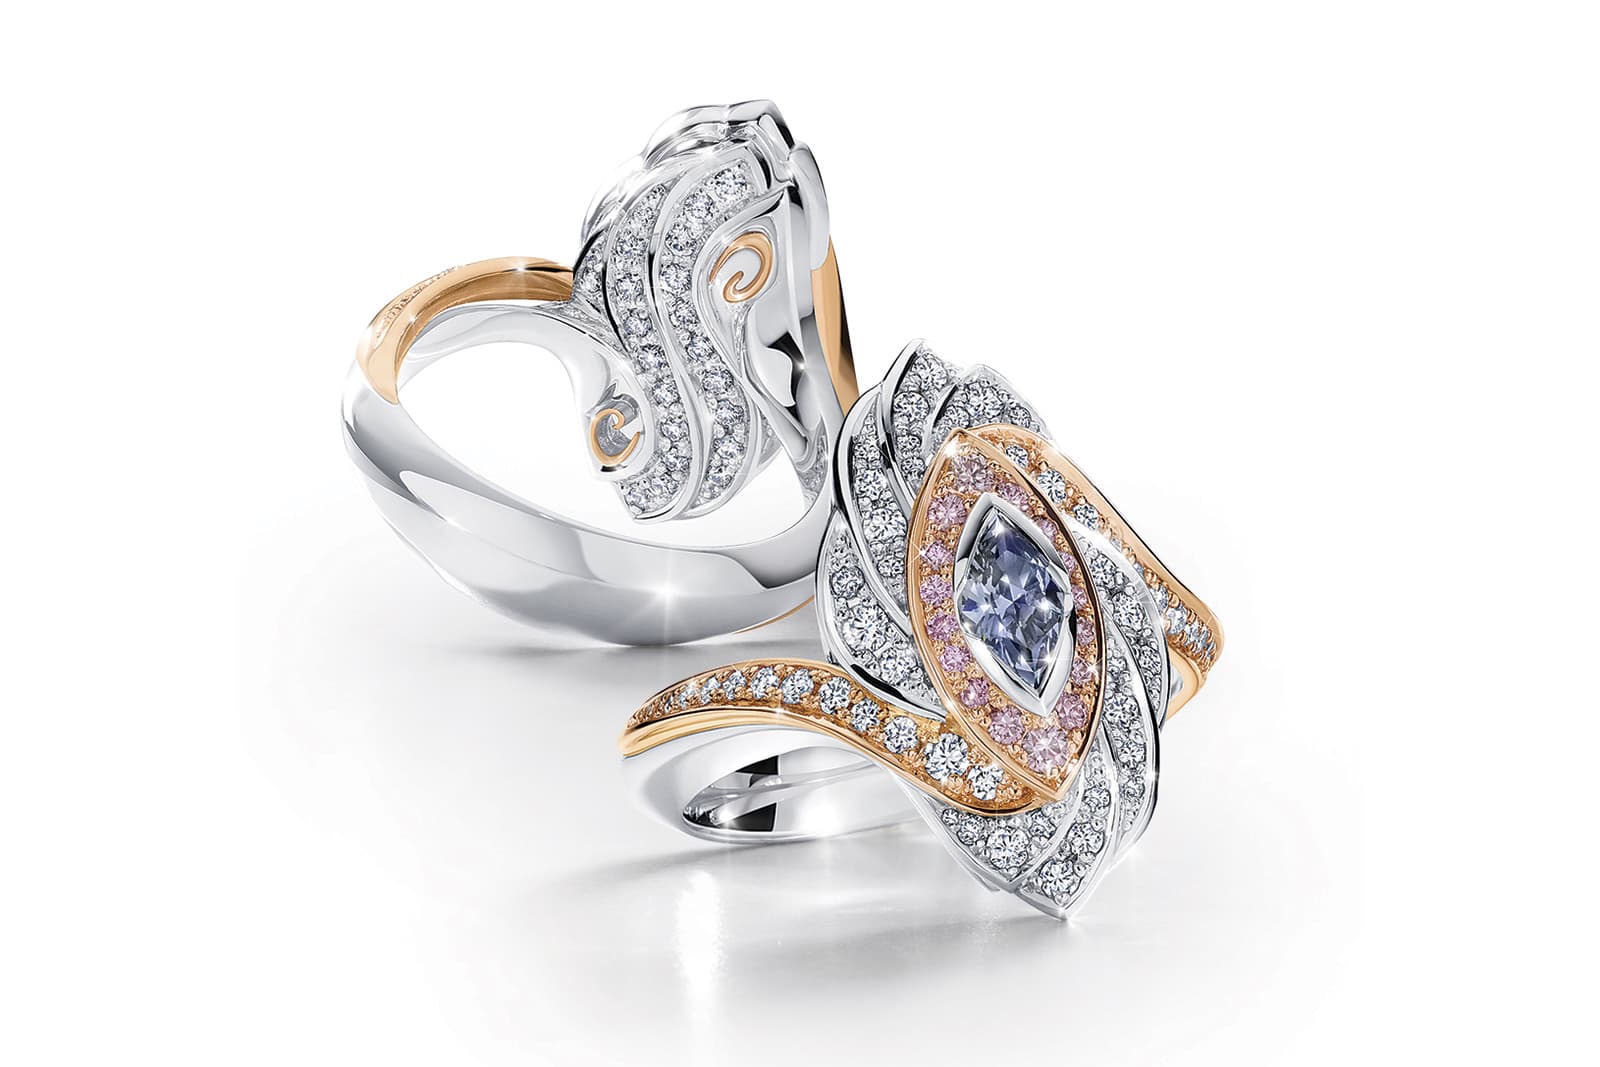 Кольцо Rayne из коллекции Calleija Couture  из платины и розового золота с голубым бриллиантом Argyle огранки "маркиз", розовыми бриллиантами Argyle и бесцветными бриллиантами